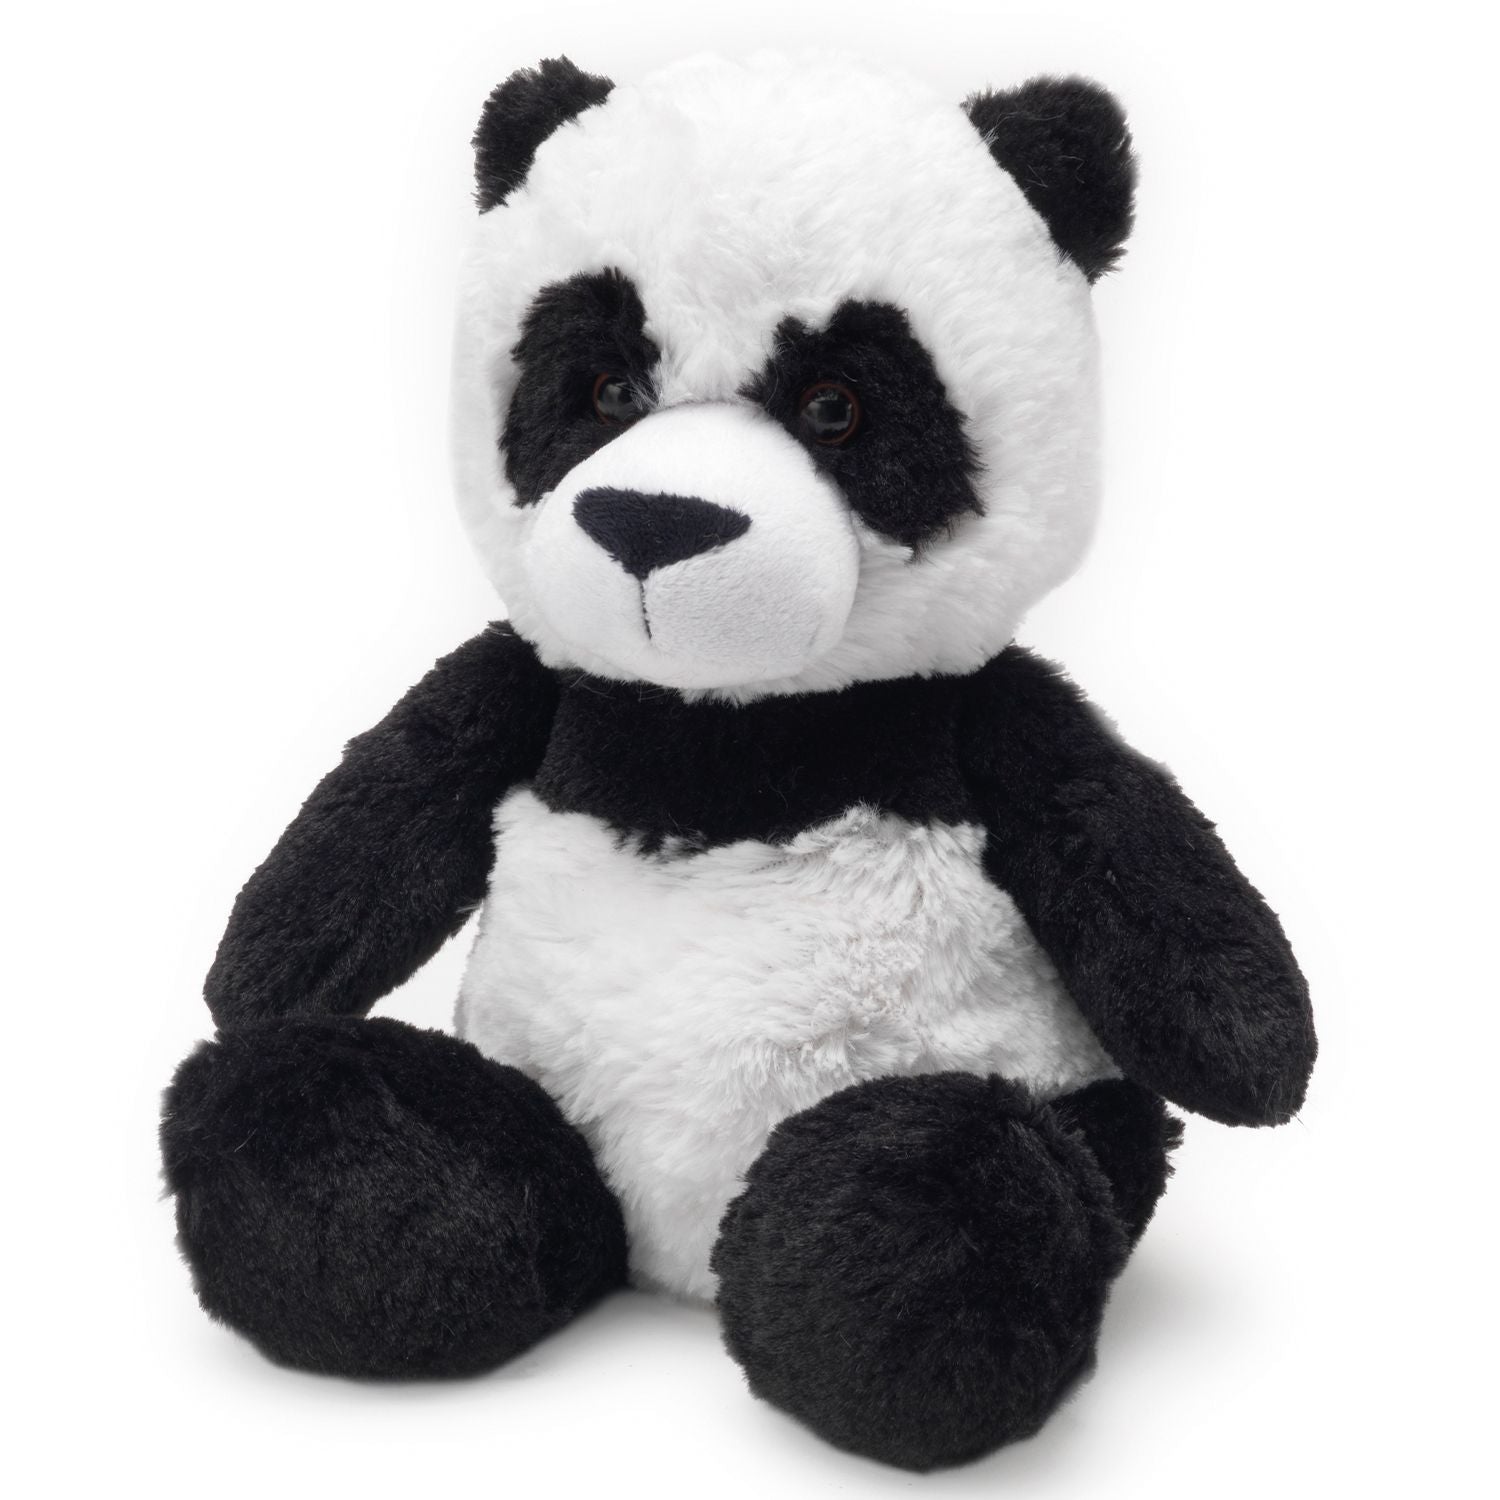 Warmies Plush Animal - Panda